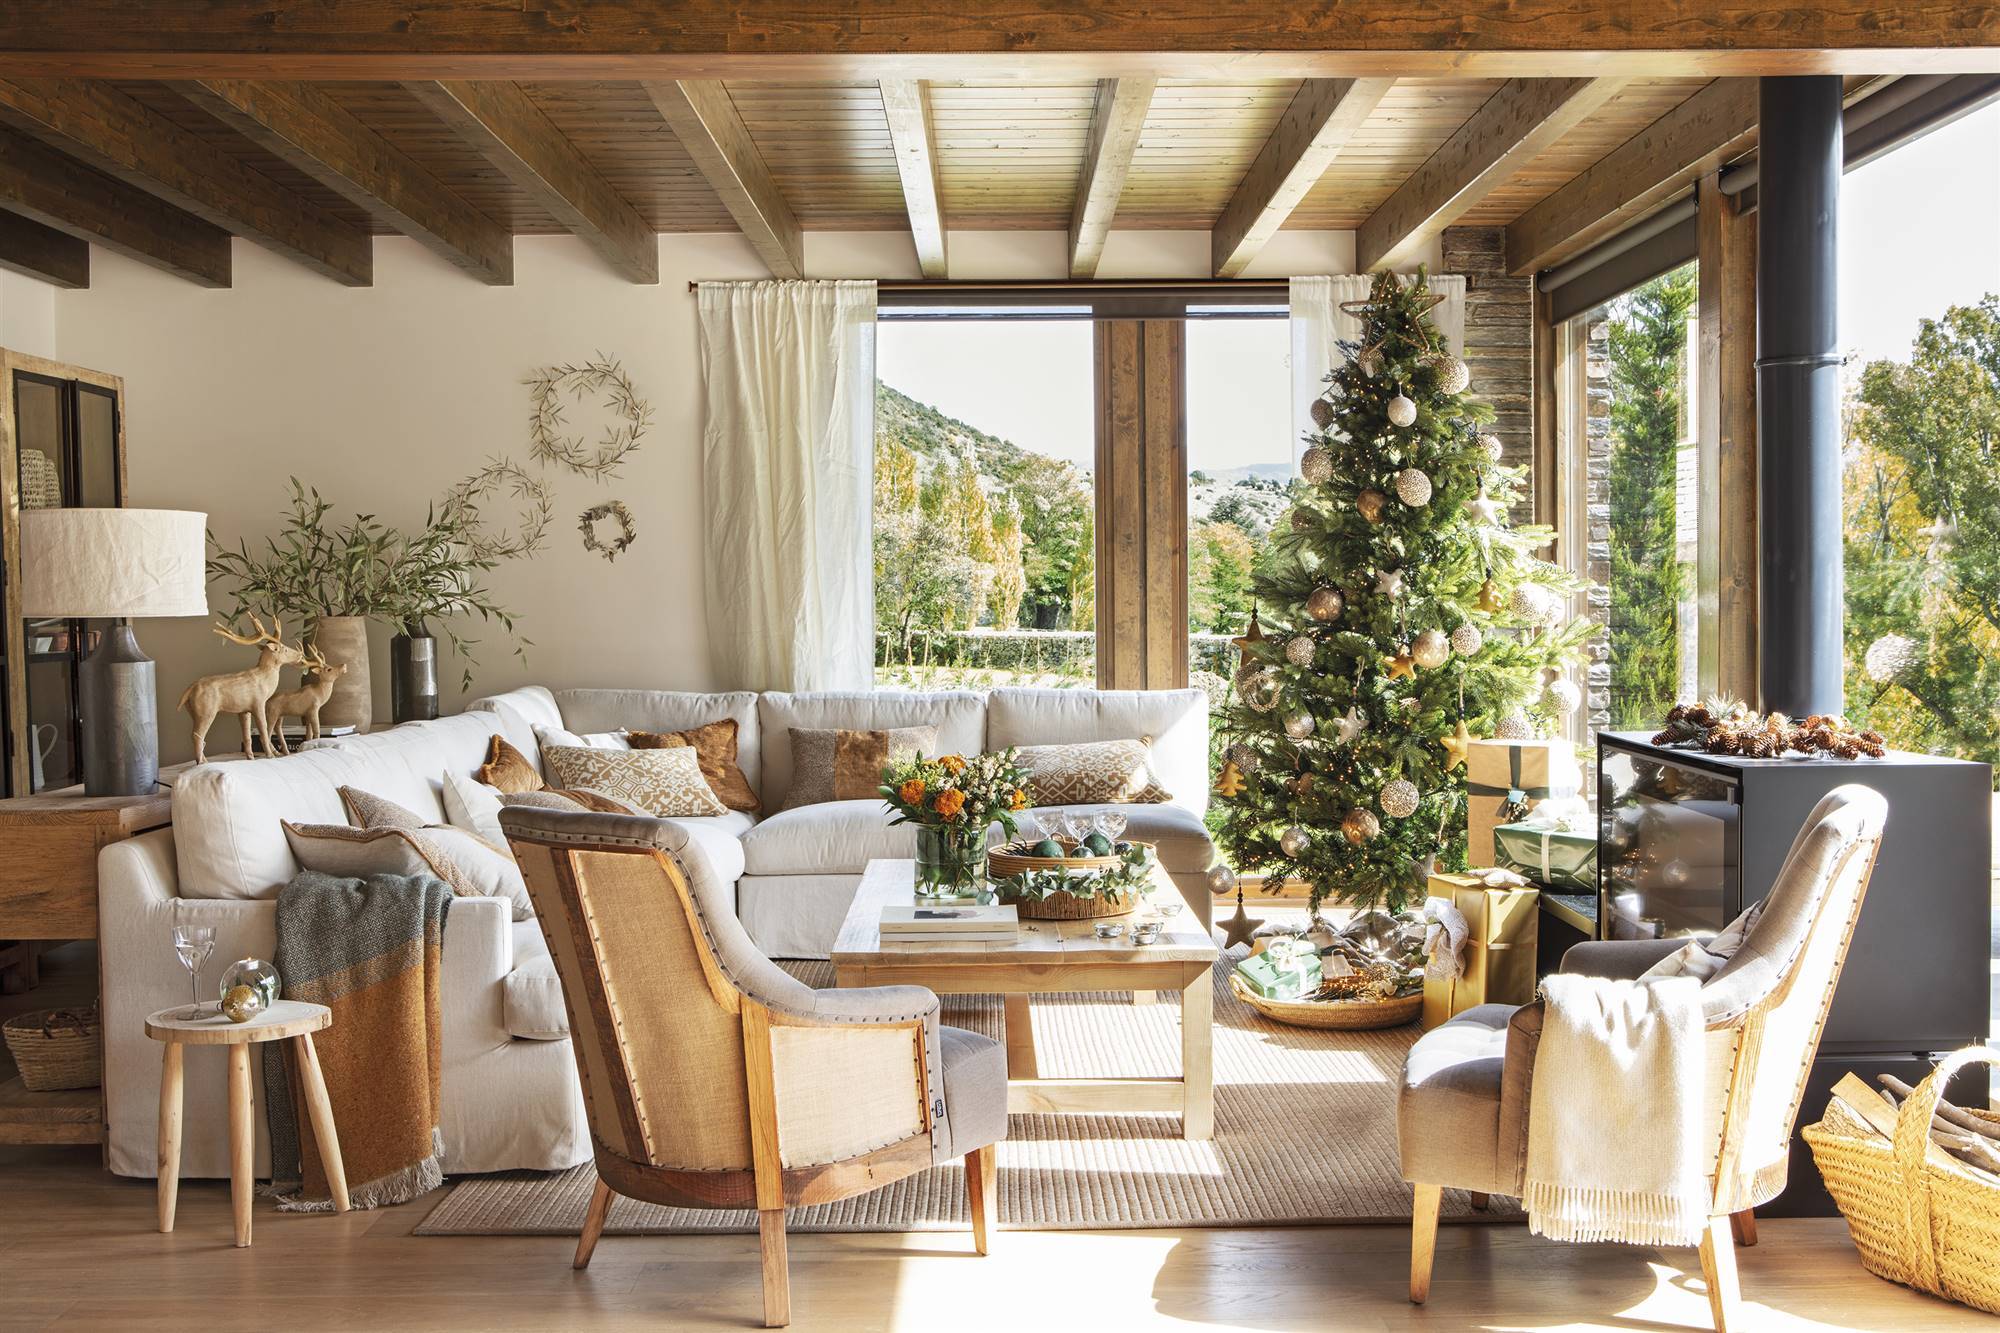 Salón rústico con vigas en el techo, sofá blanco, dos butacas y árbol de Navidad.